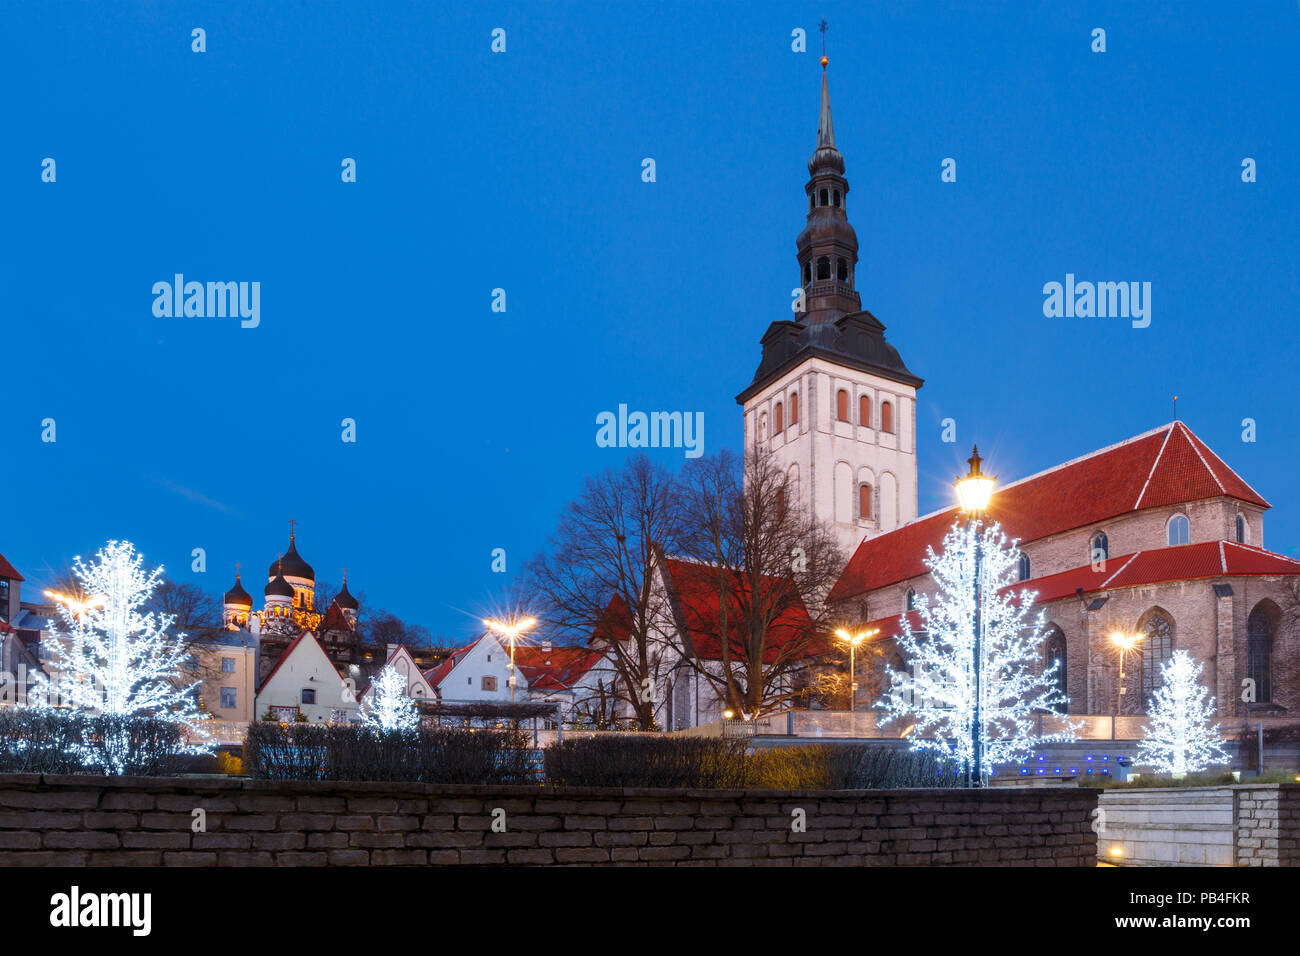 Night street in the Old Town of Tallinn, Estonia Stock Photo